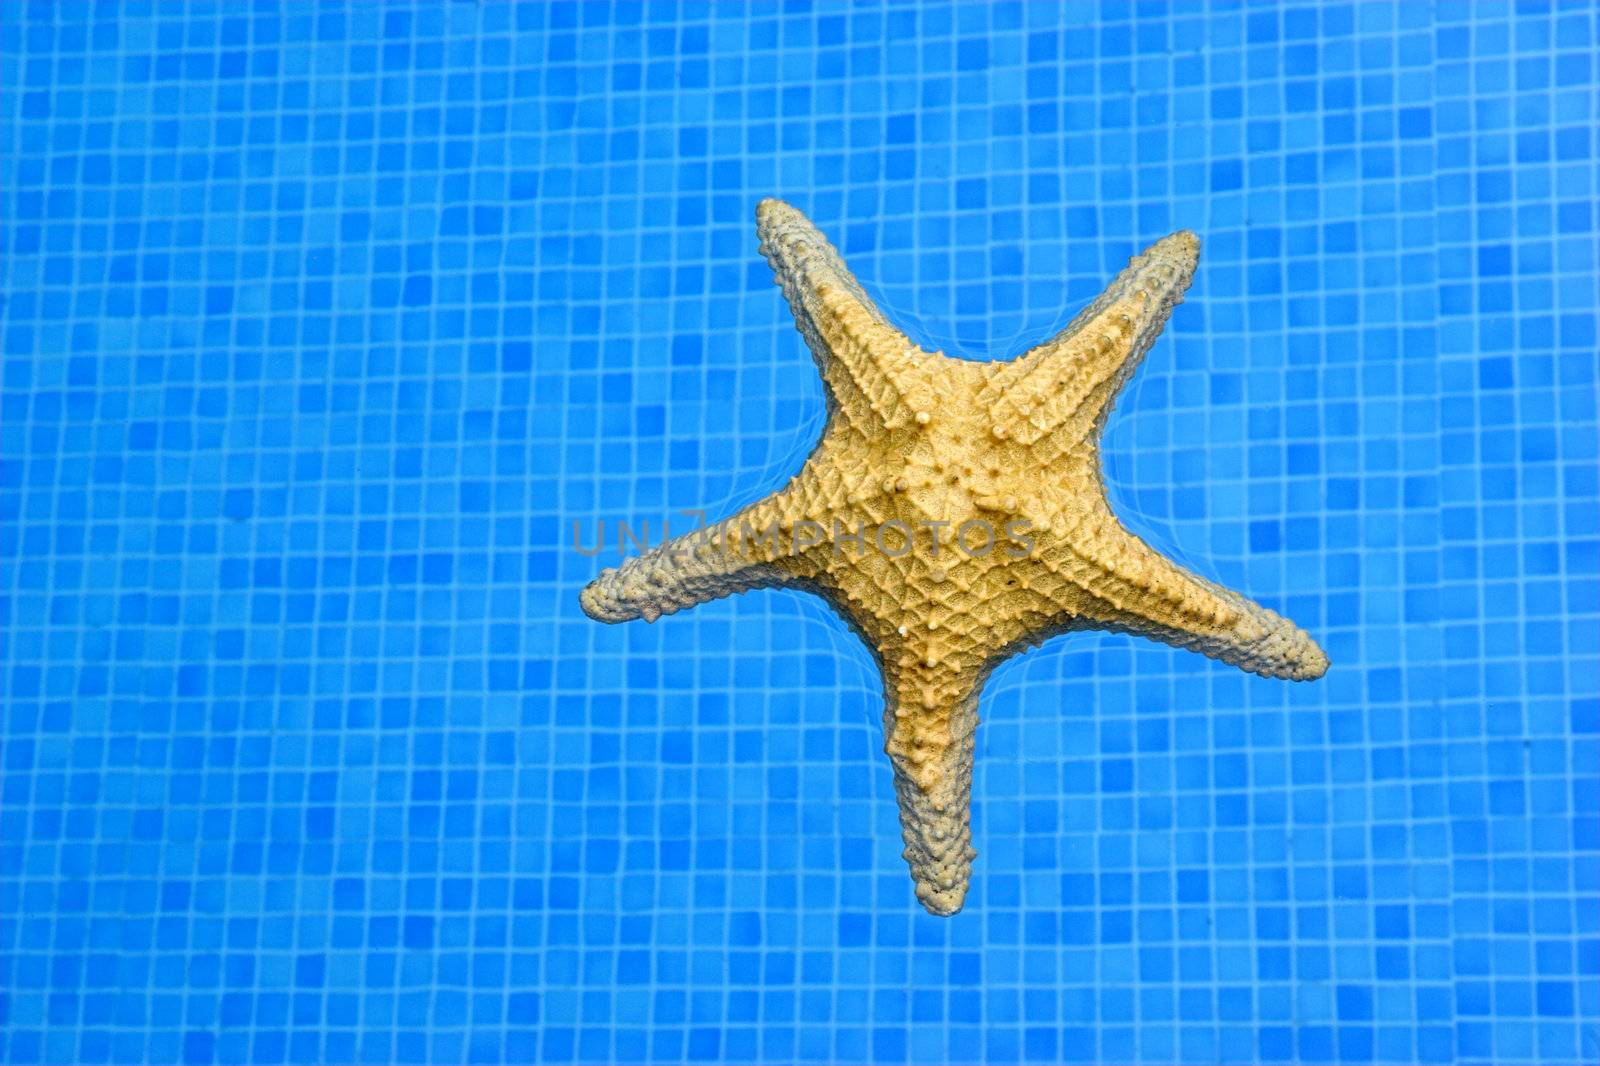 Starfish by Iko